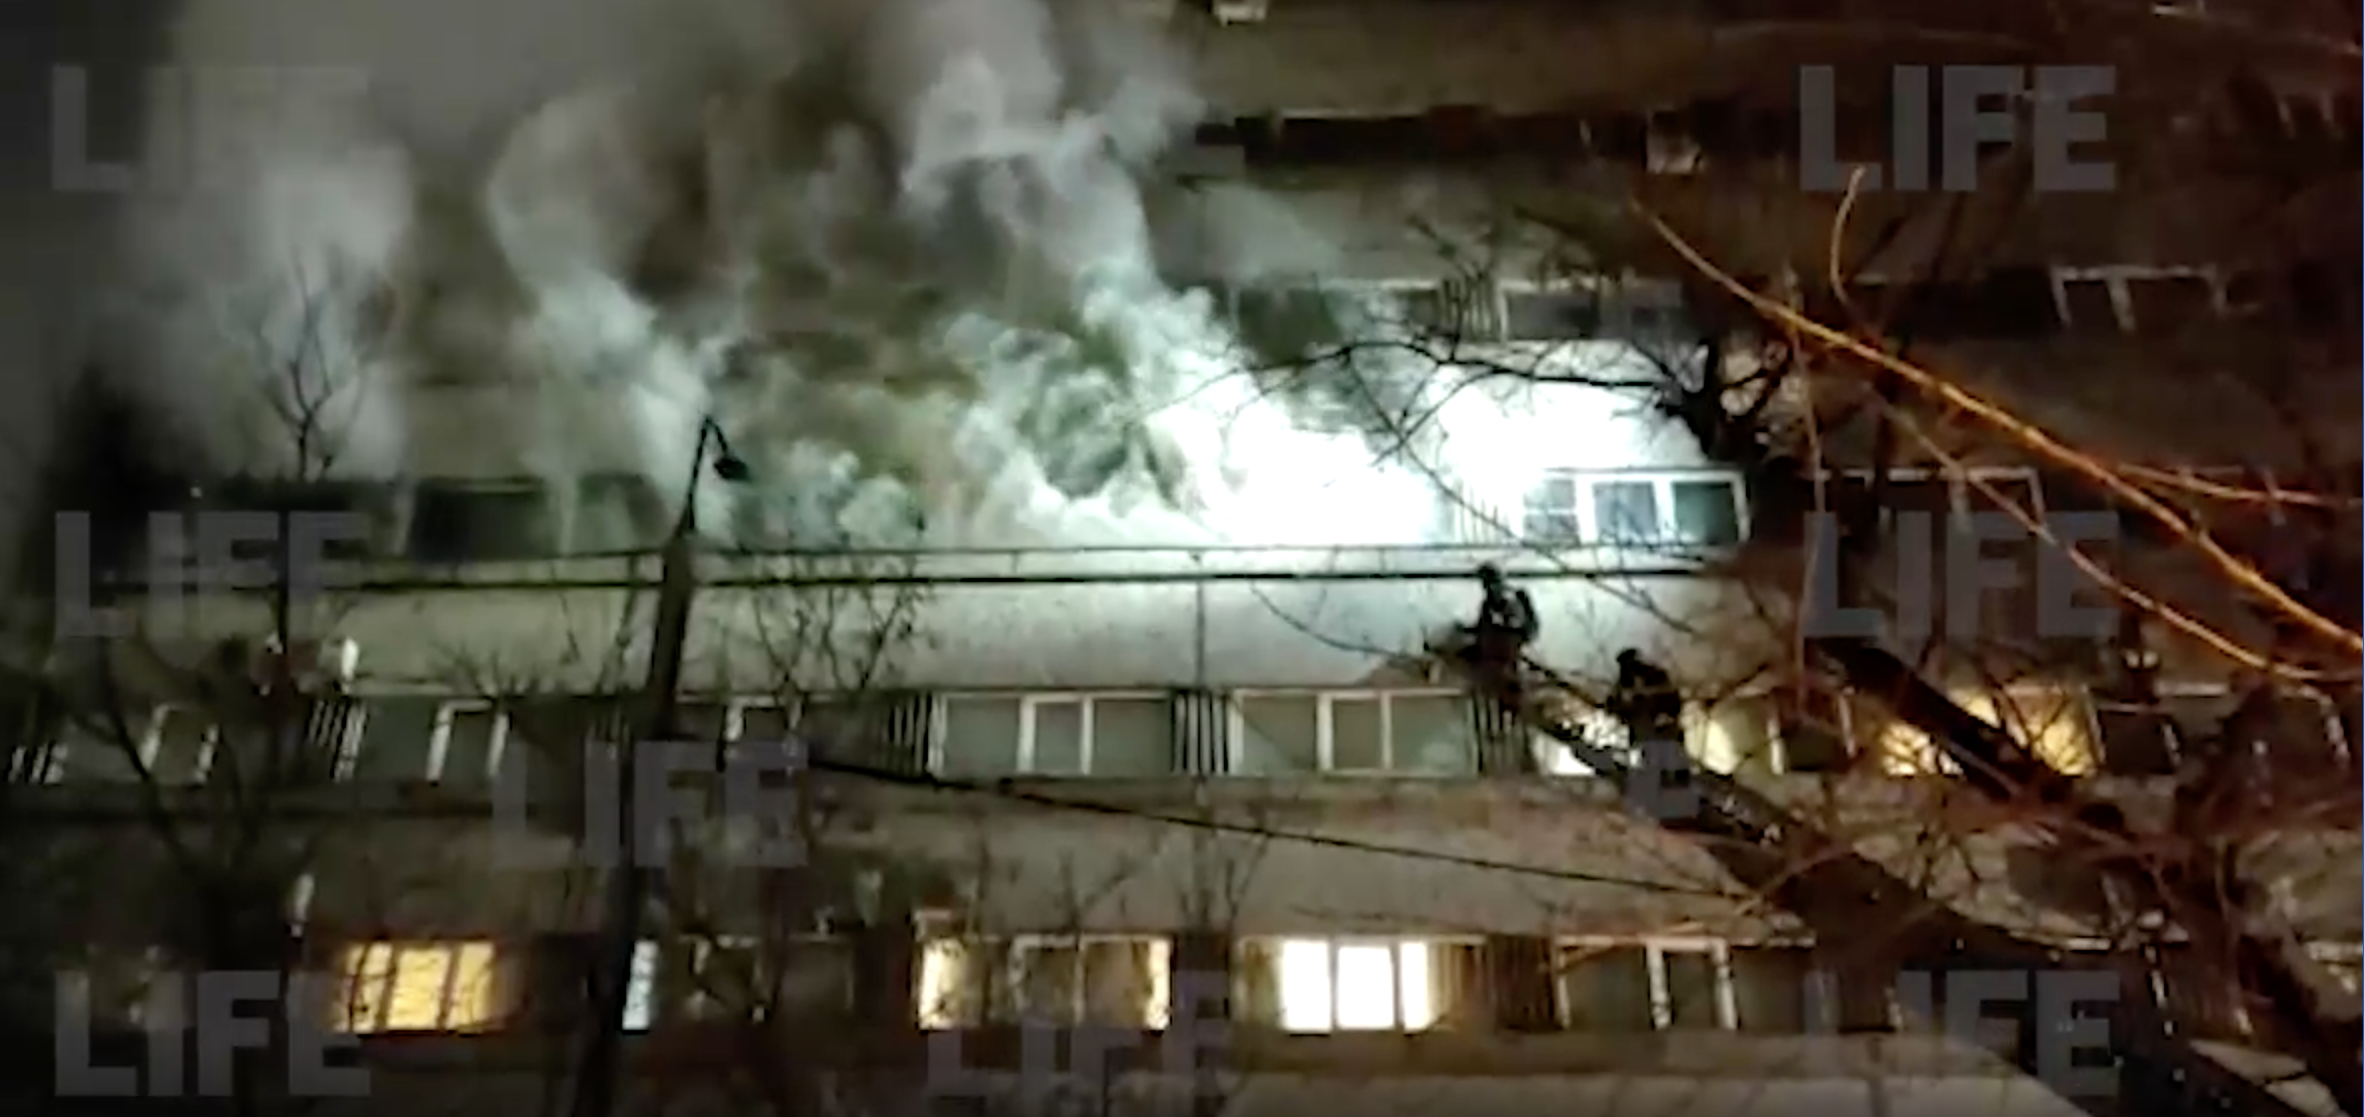 Постоялец гостиницы в центре Москвы поджёг вещи в коридоре и устроил крупный пожар